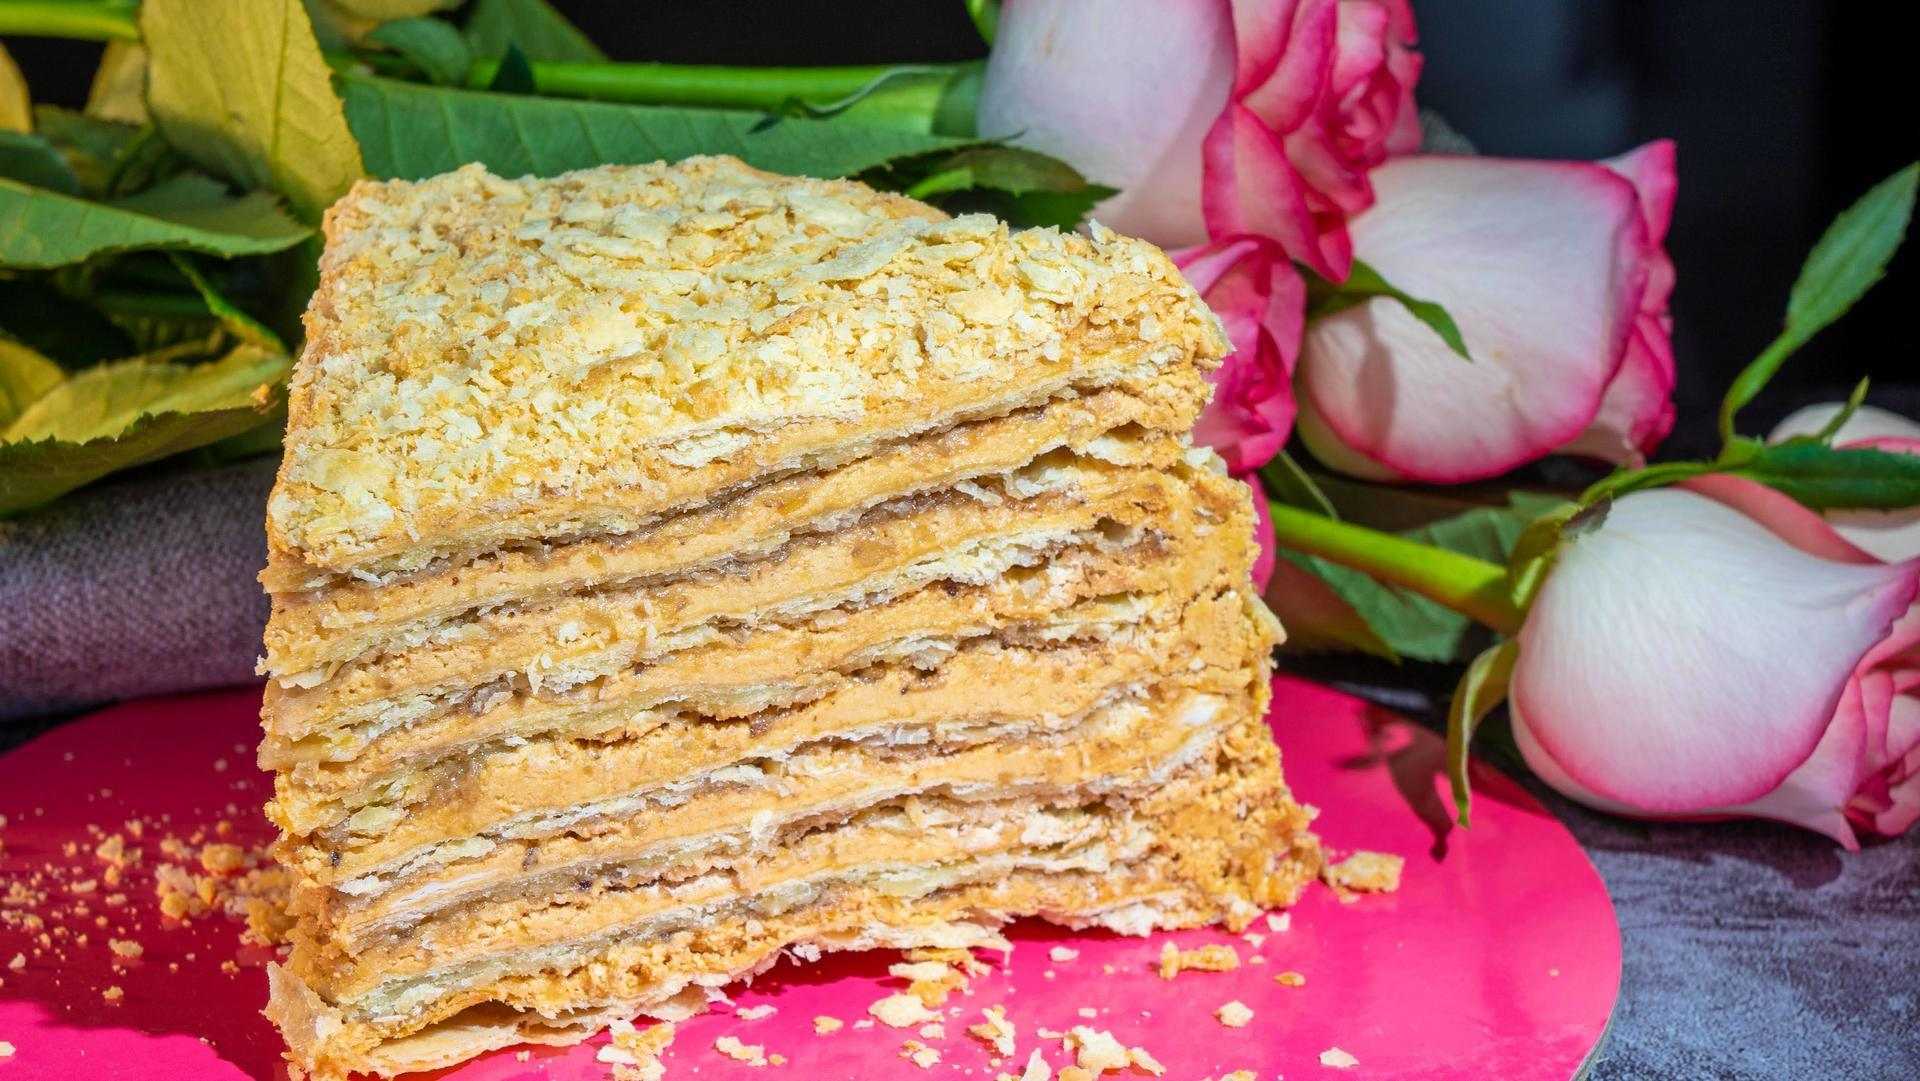 Торт наполеон: классический рецепт с фото пошагово в домашних условиях